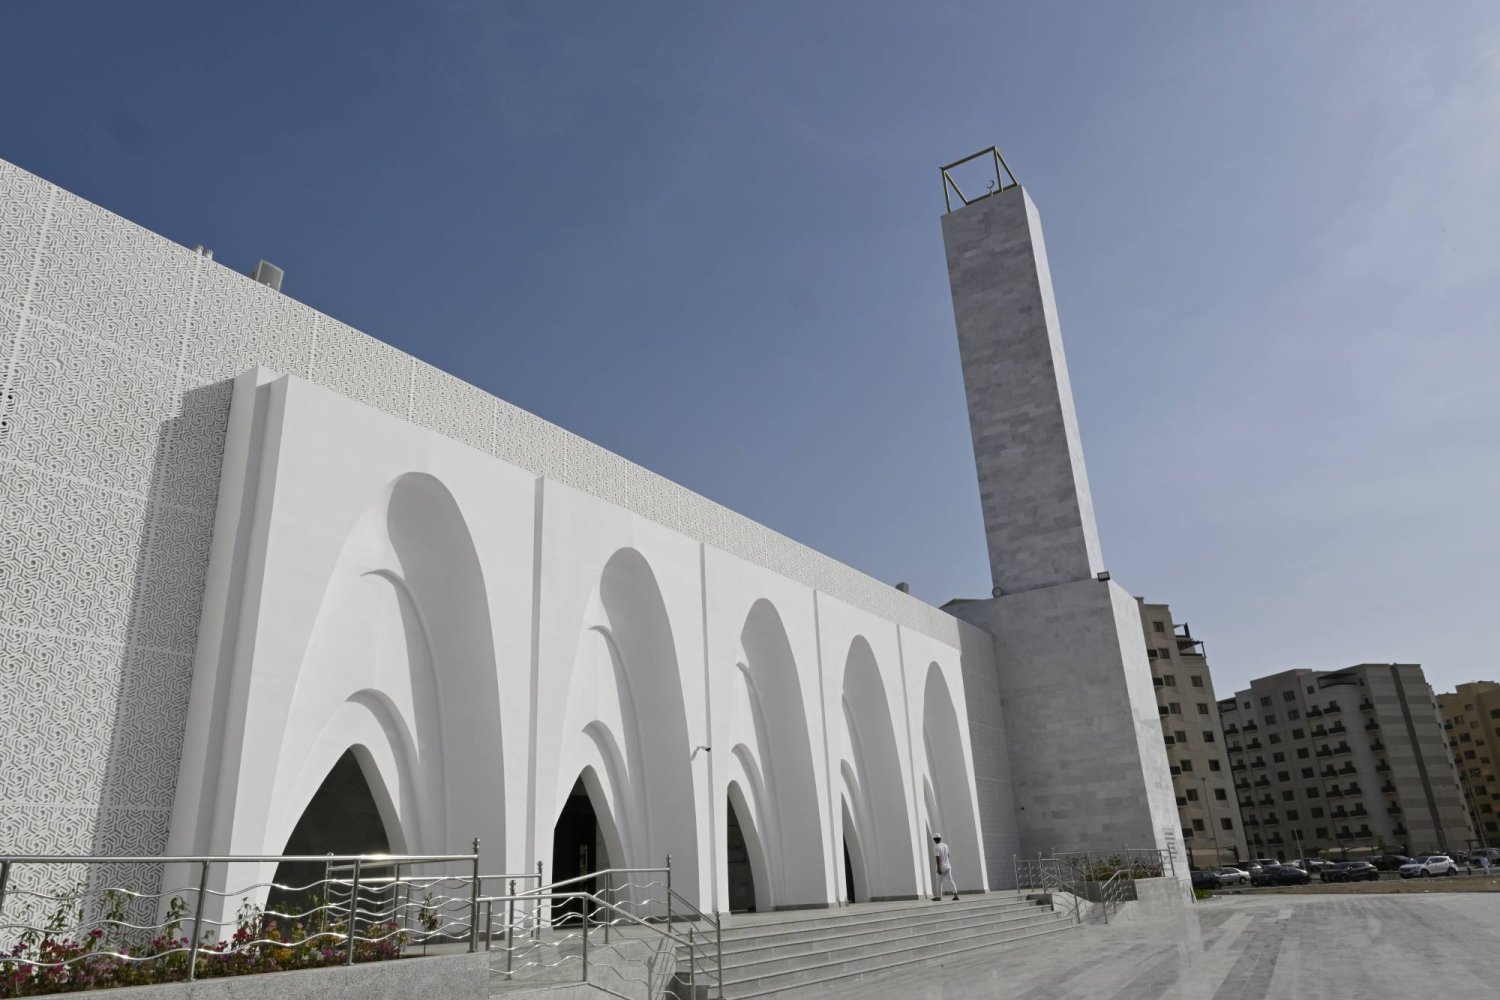 استغرق تشييد المسجد قرابة 6 أشهر بواسطة 4 طابعات إنشائية صينية (وكالة أنباء العالم العربي)